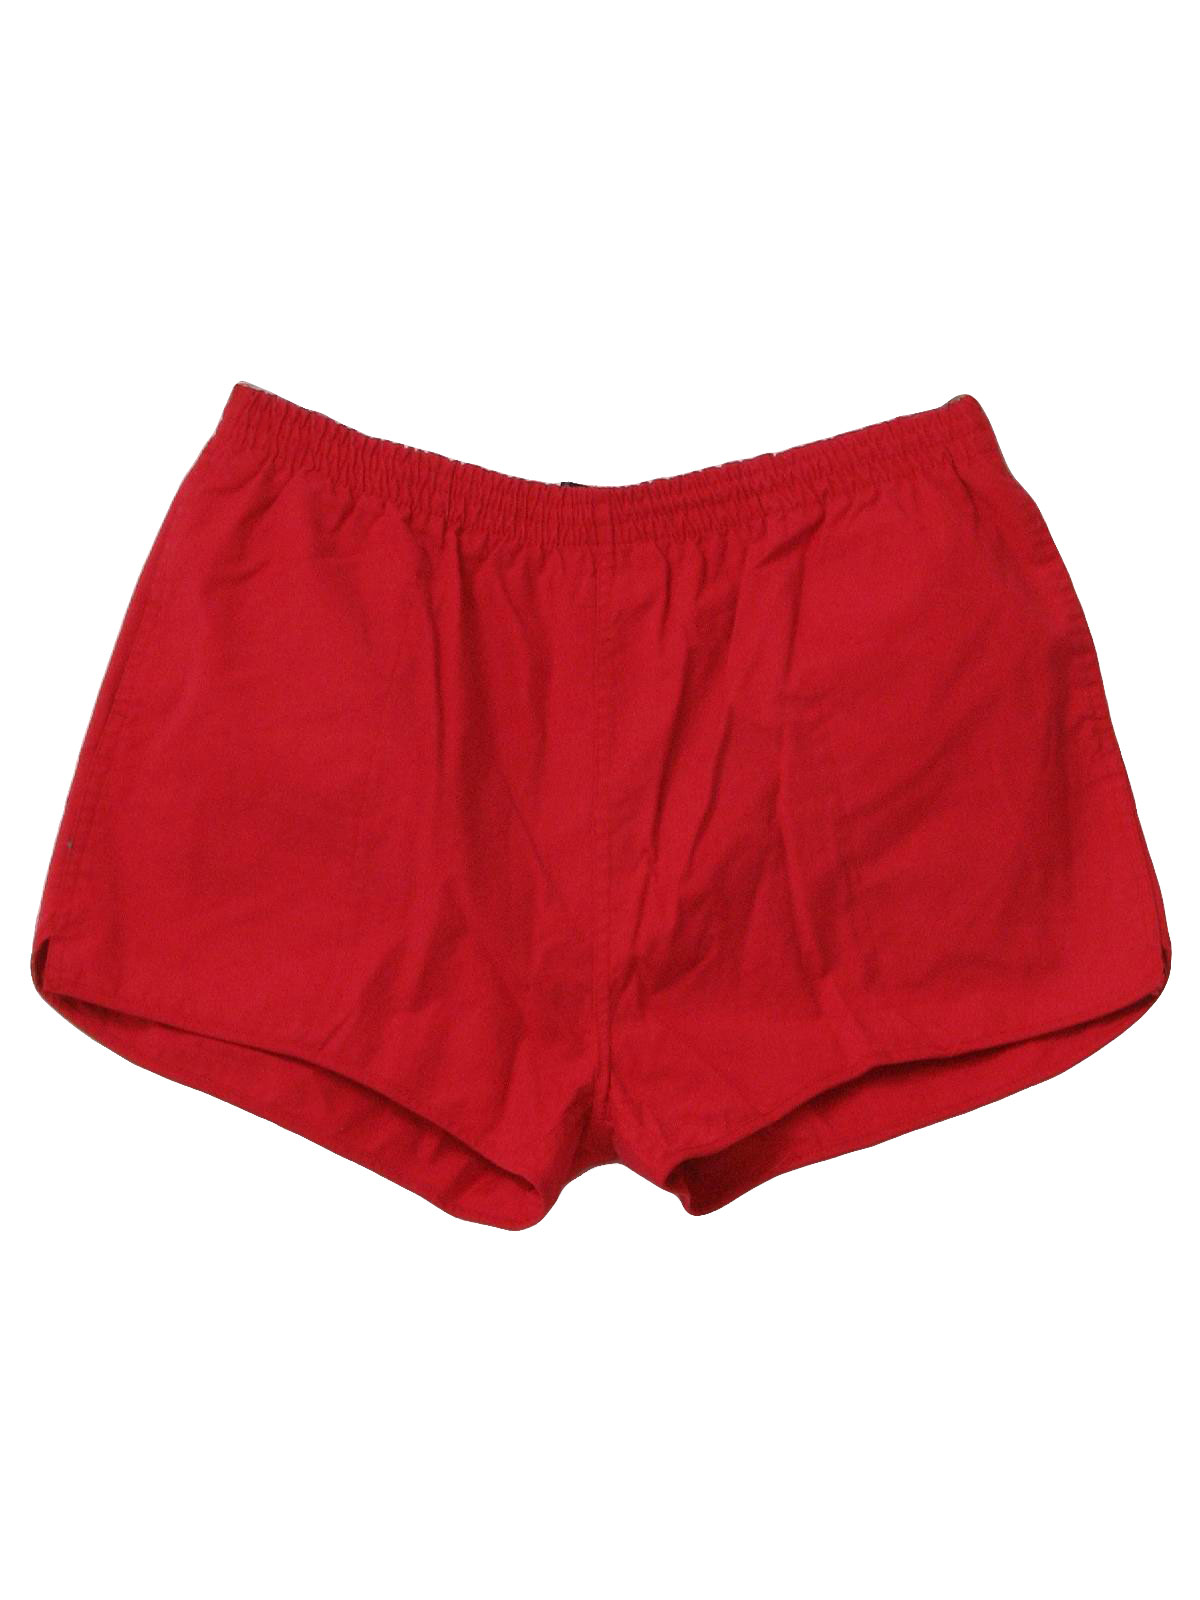 Retro 1990's Swimsuit/Swimwear (GuySport) : 90s -GuySport- Mens red ...